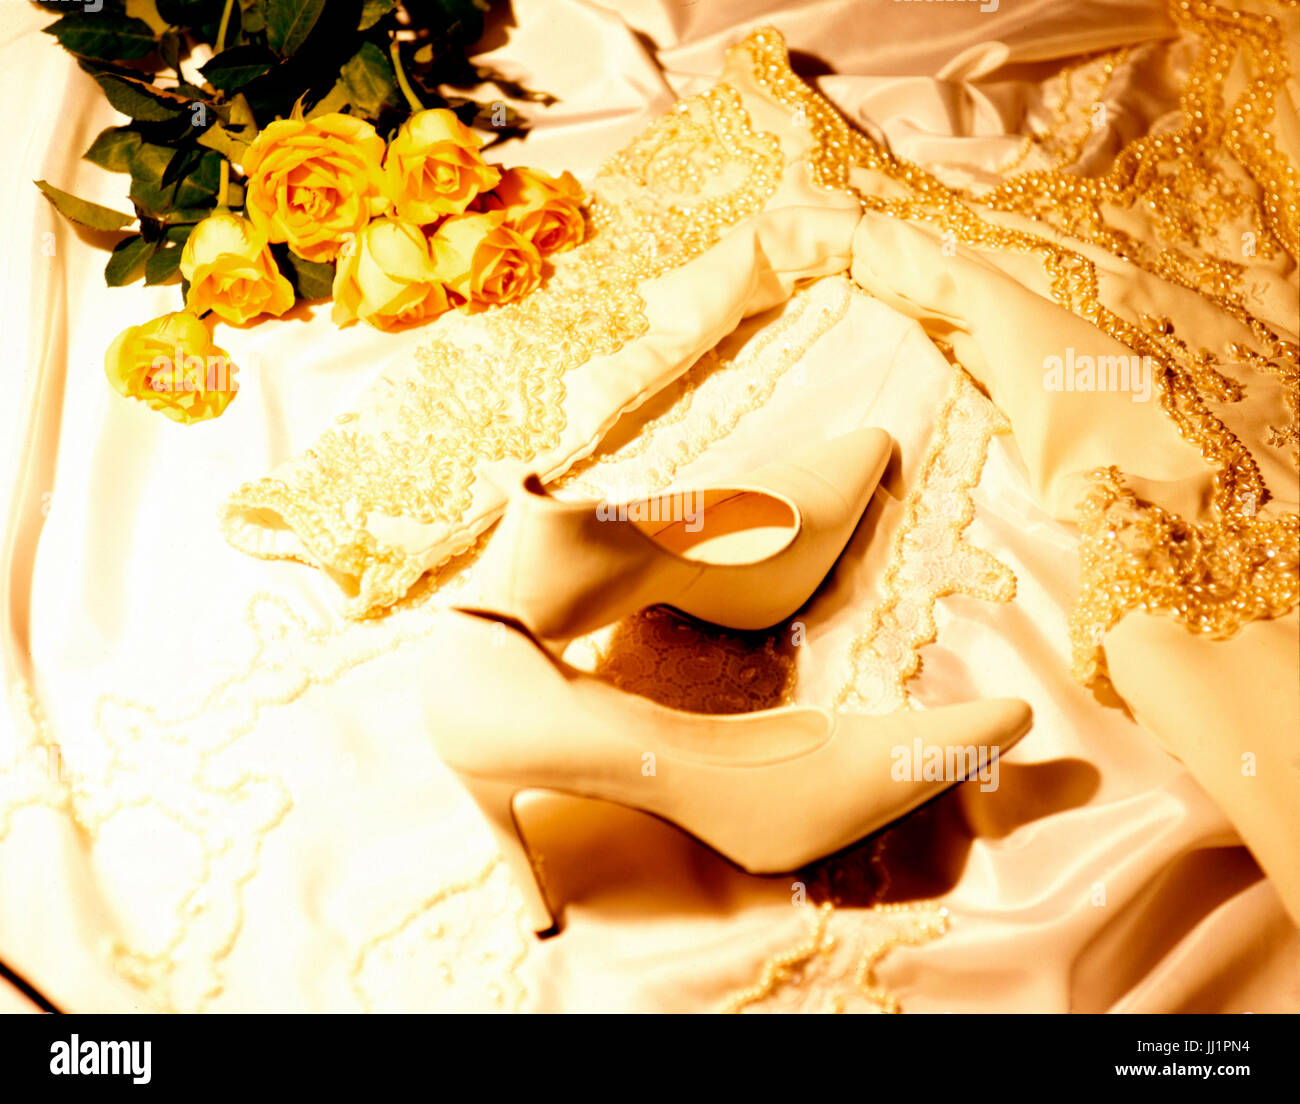 Wedding dress, Porto Alegre, Rio Grande do Sul, Brazil Stock Photo